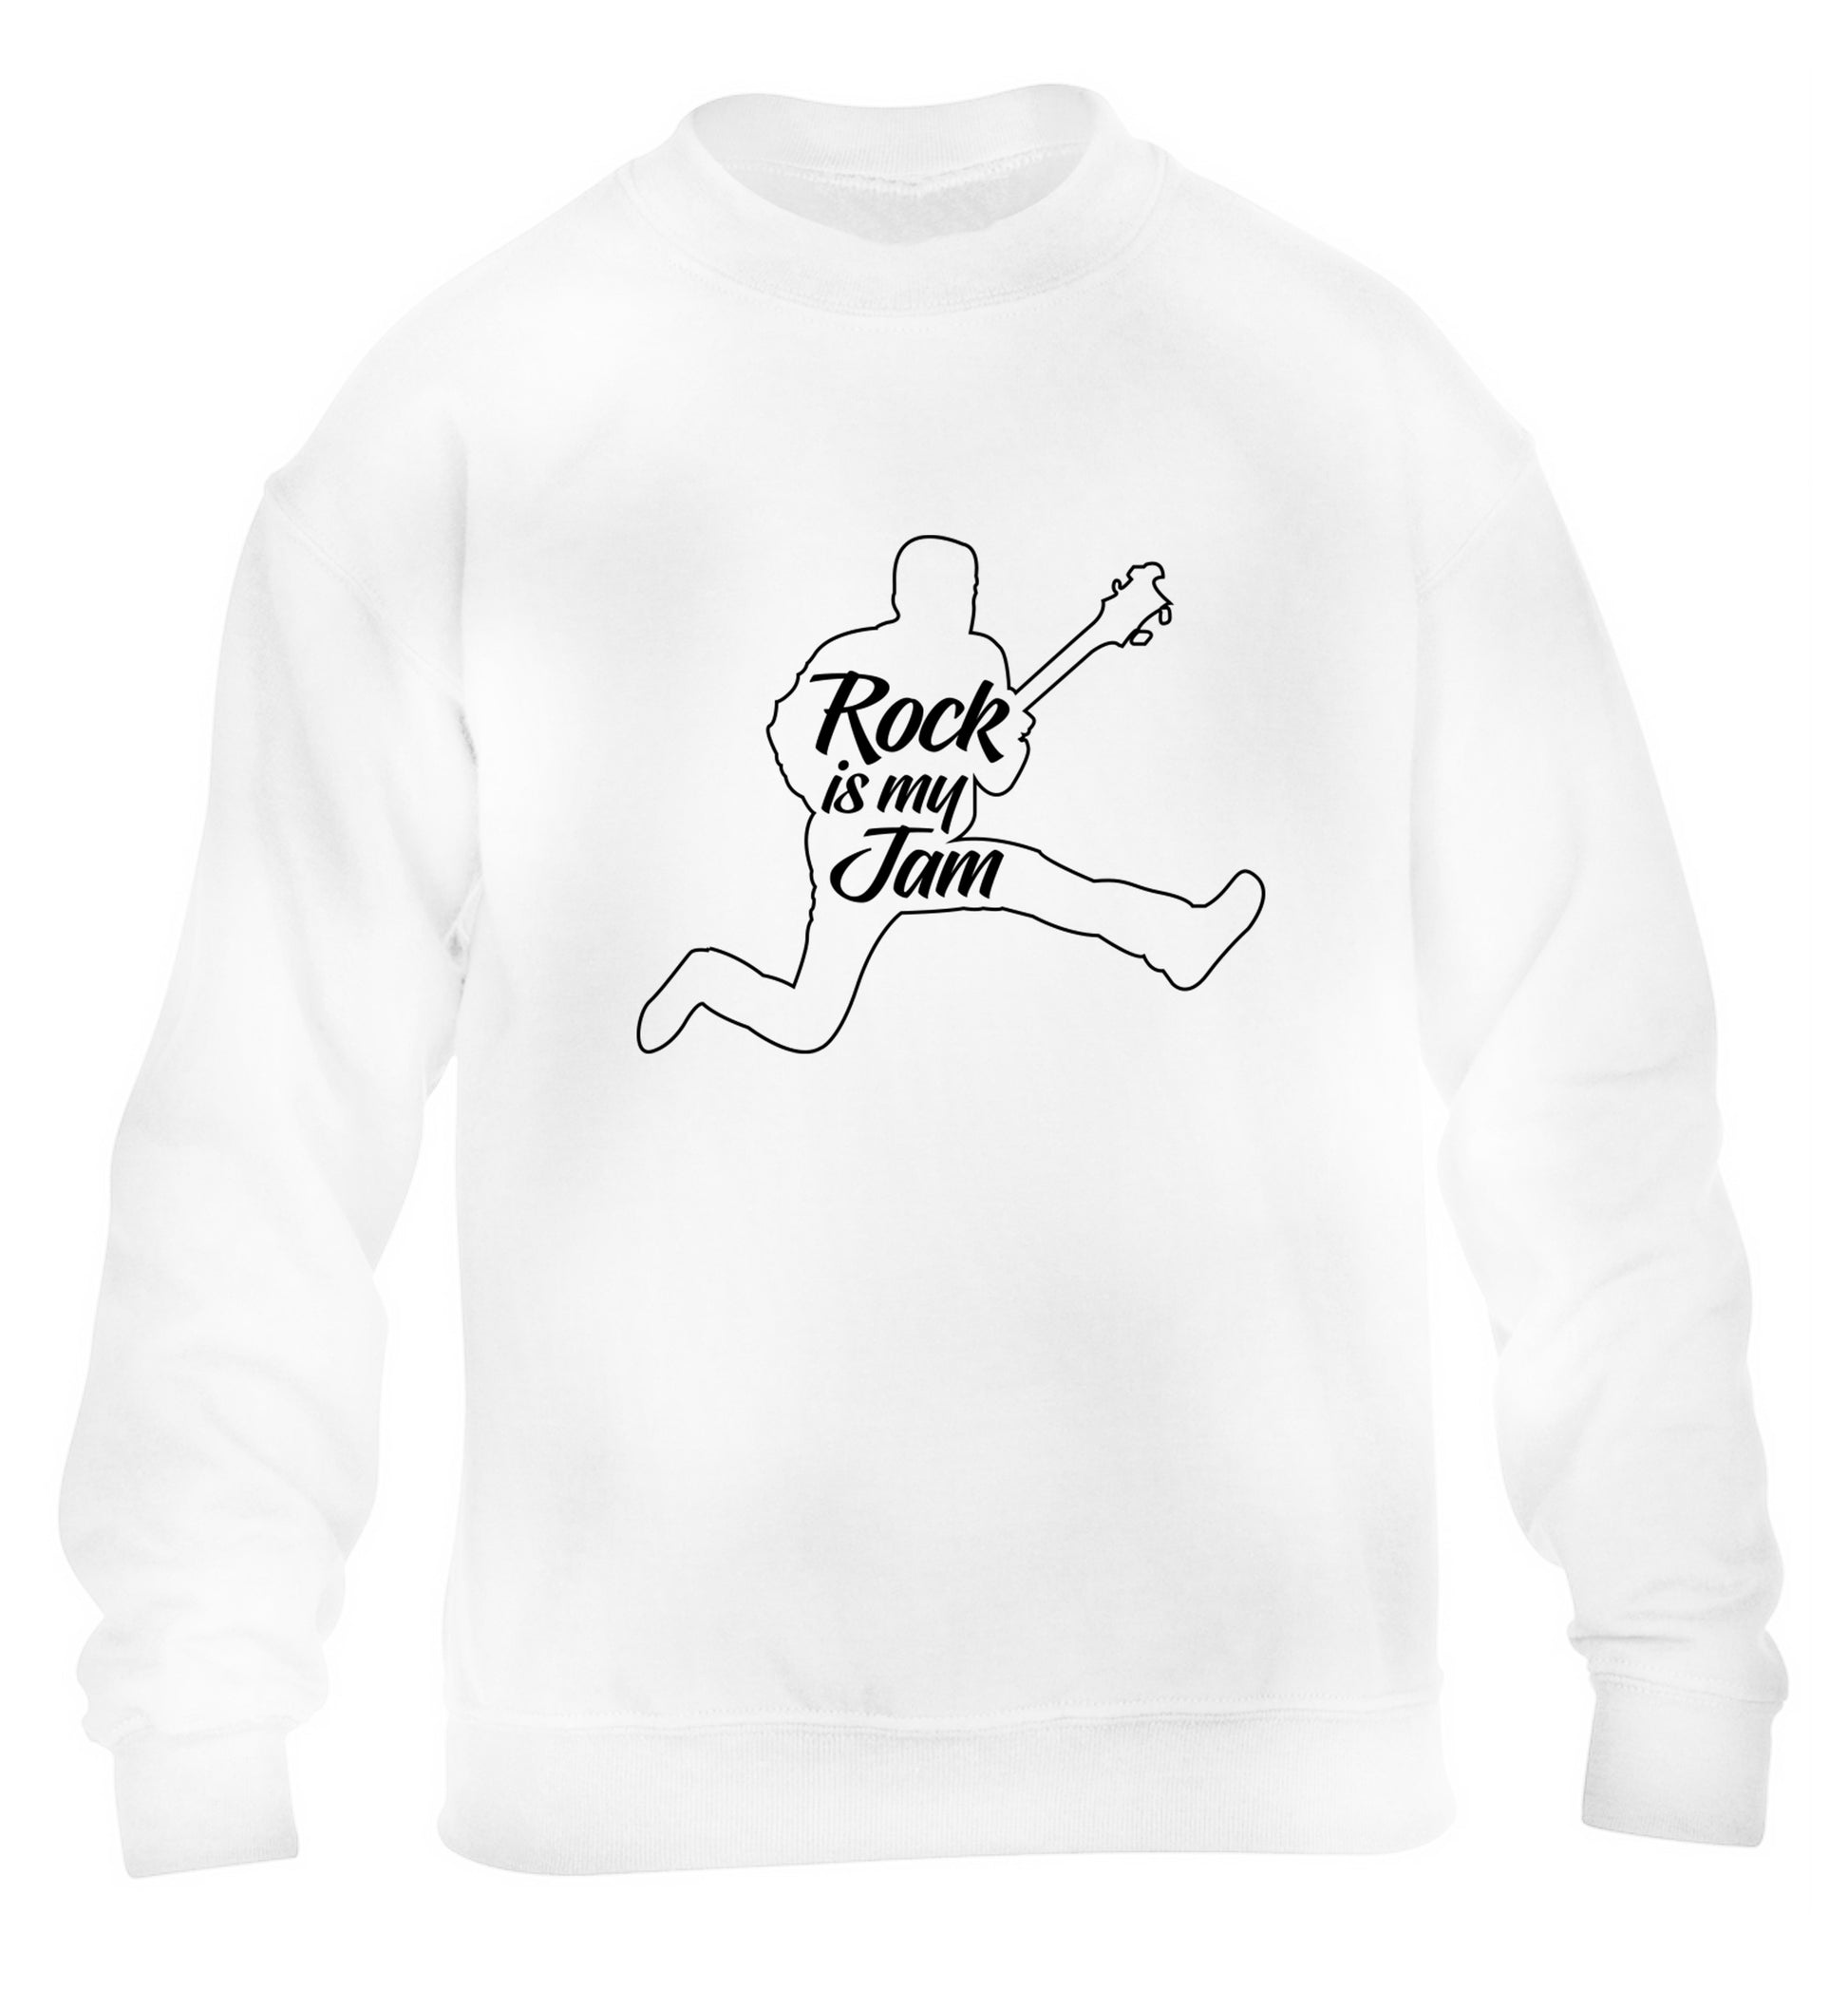 Rock is my jam children's white sweater 12-13 Years